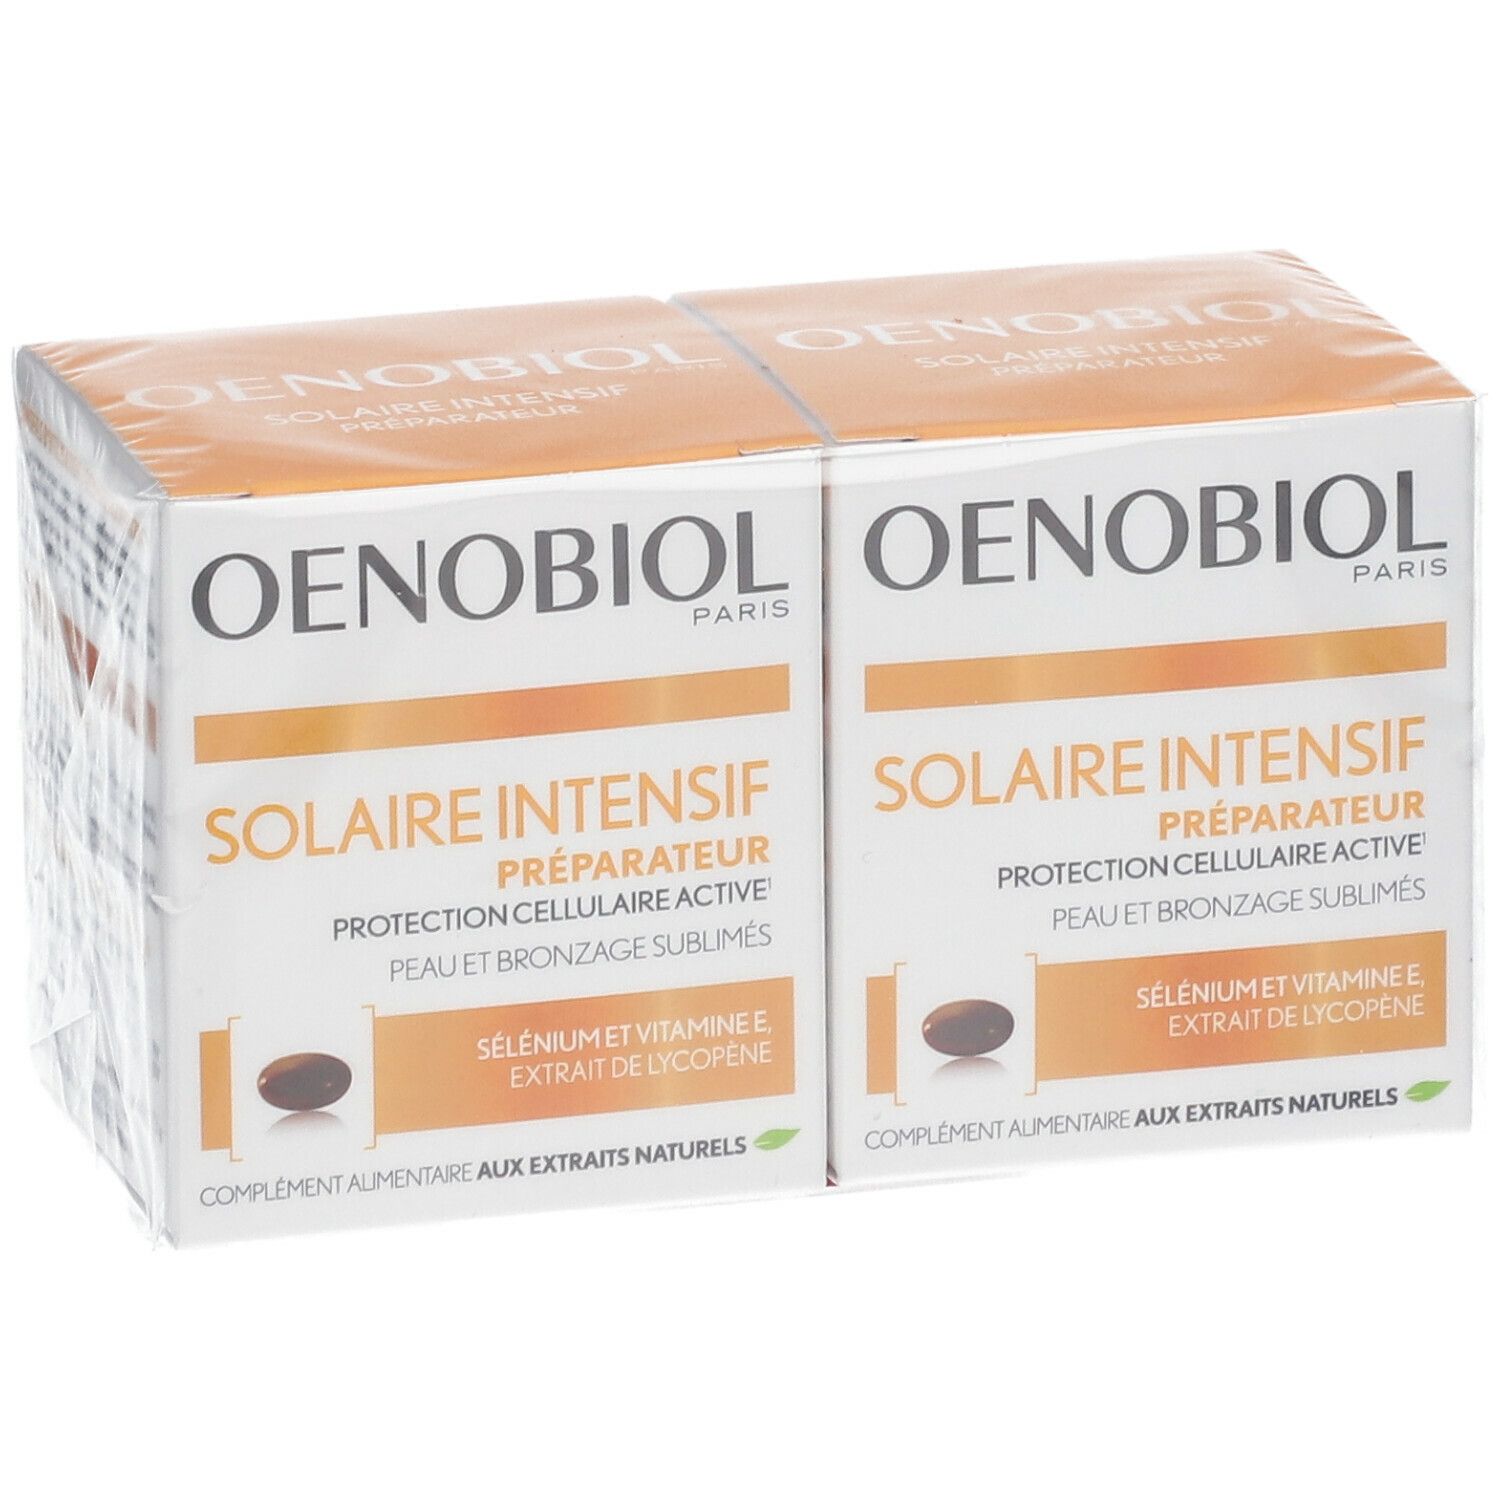 Oenobiol® Solaire Intensif® Für Normale Haut Kapseln Shop Apothekech